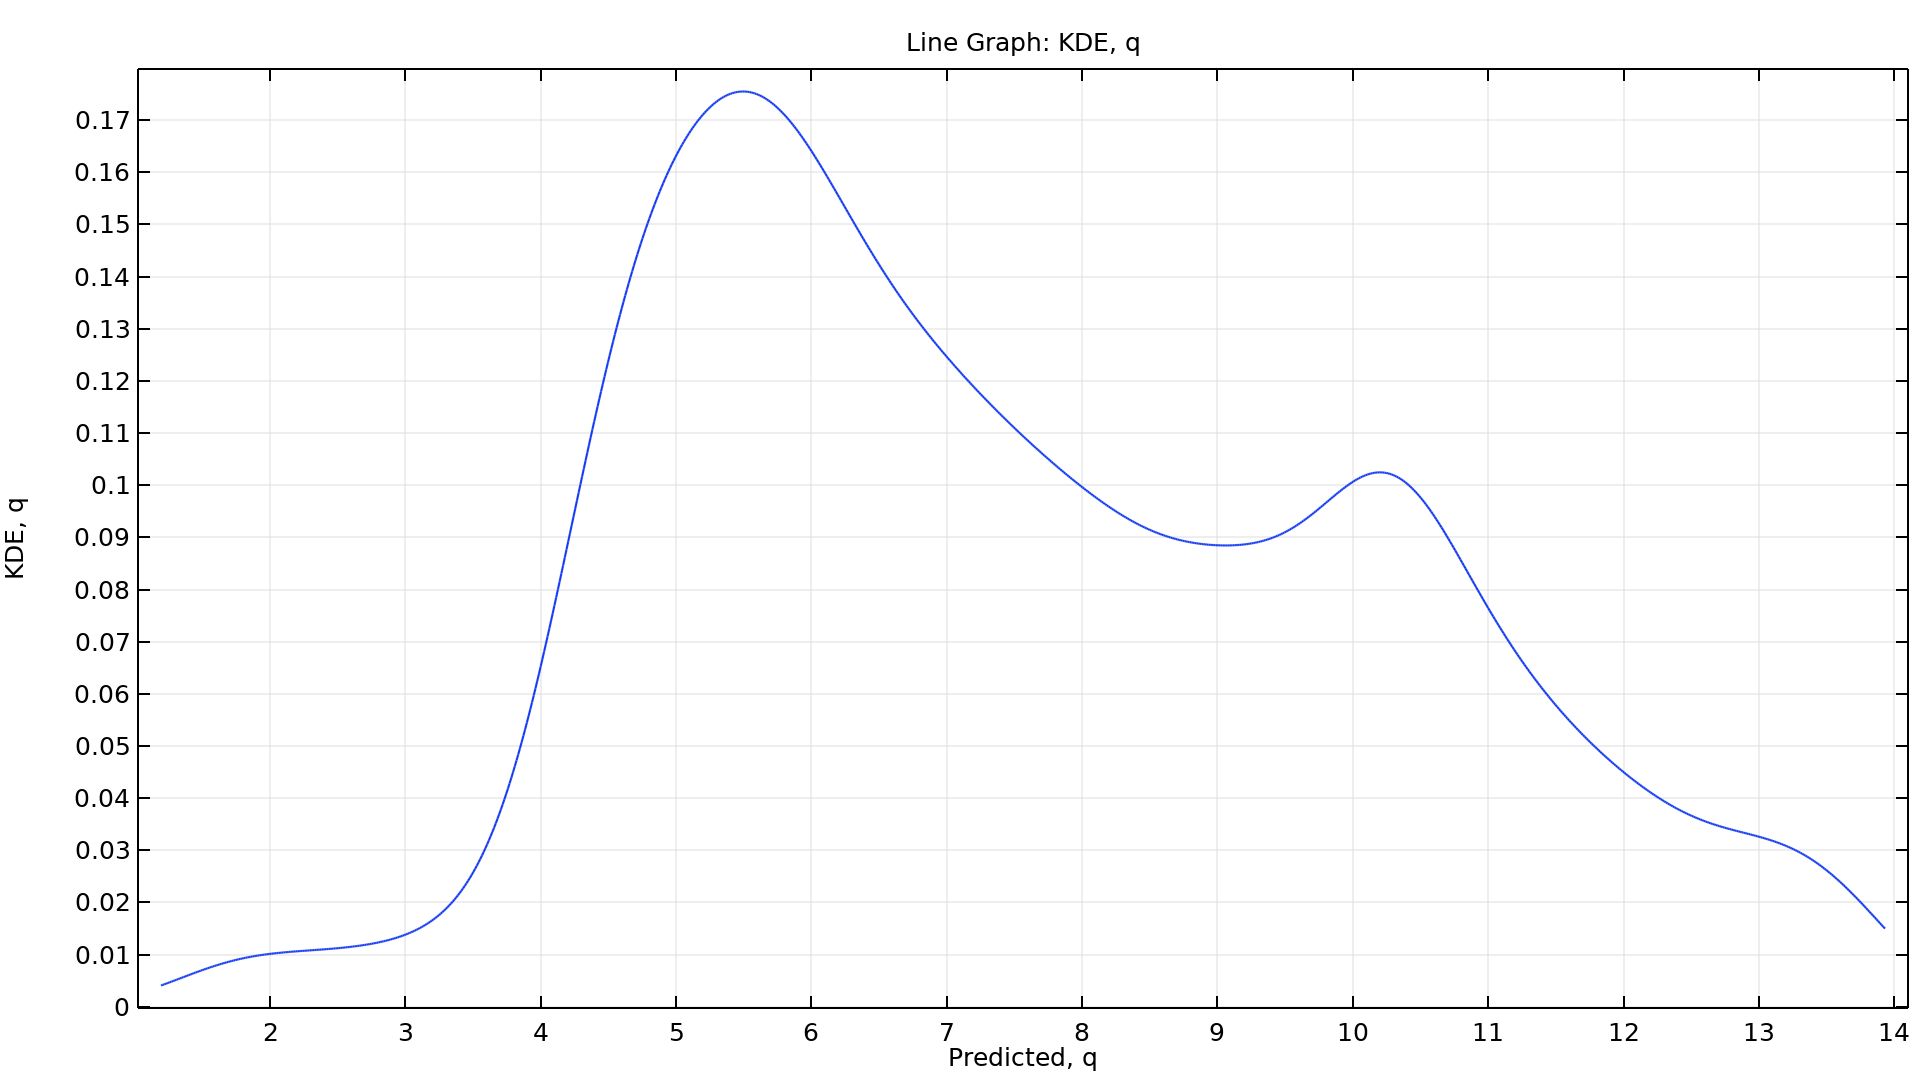 Grafico a linee di stima della densità del kernel con KDE come asse y e "previsto" come asse x.